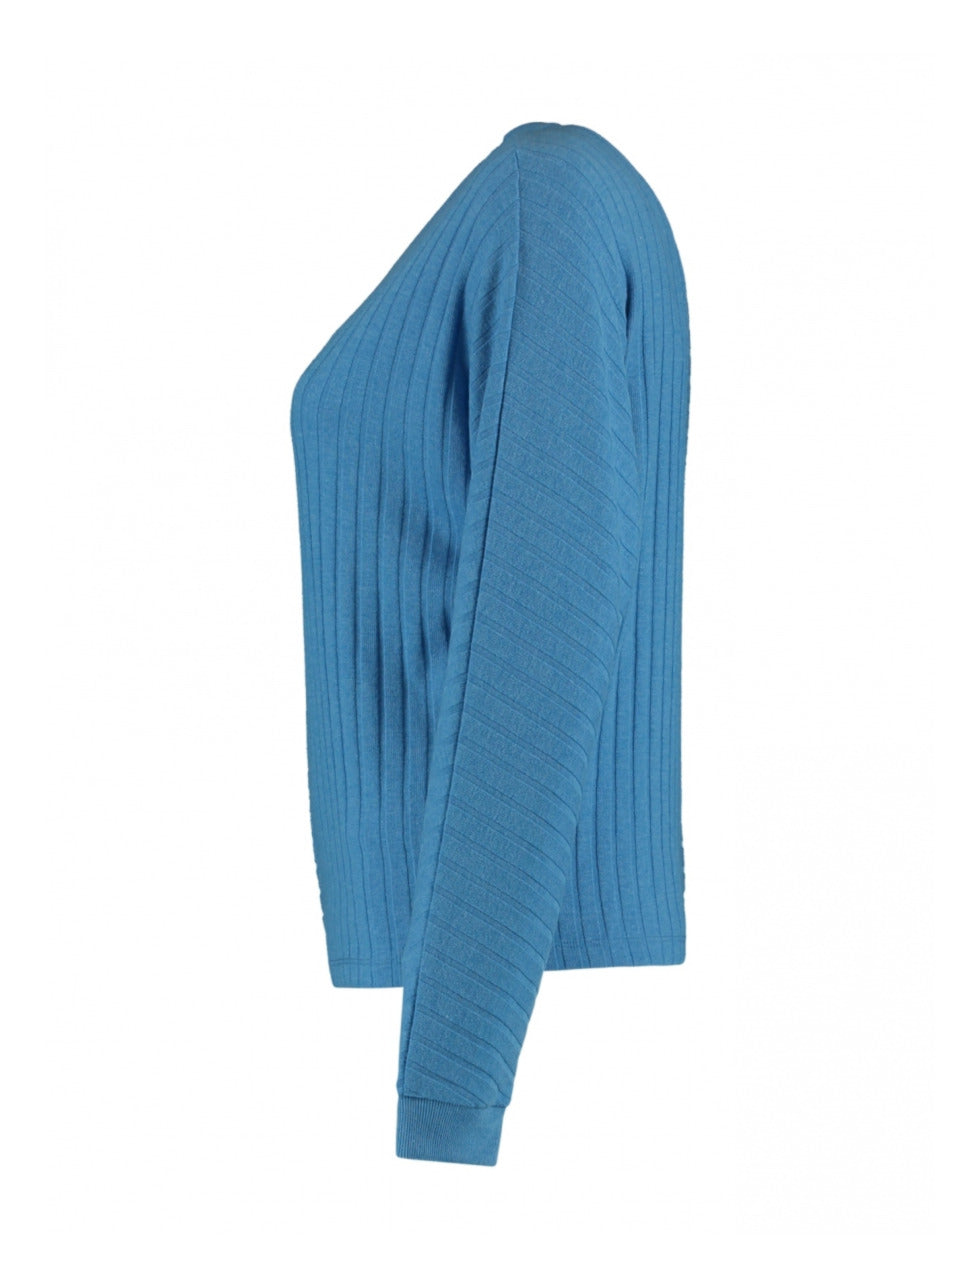 Ona Ocean Blue Fine Knit Top